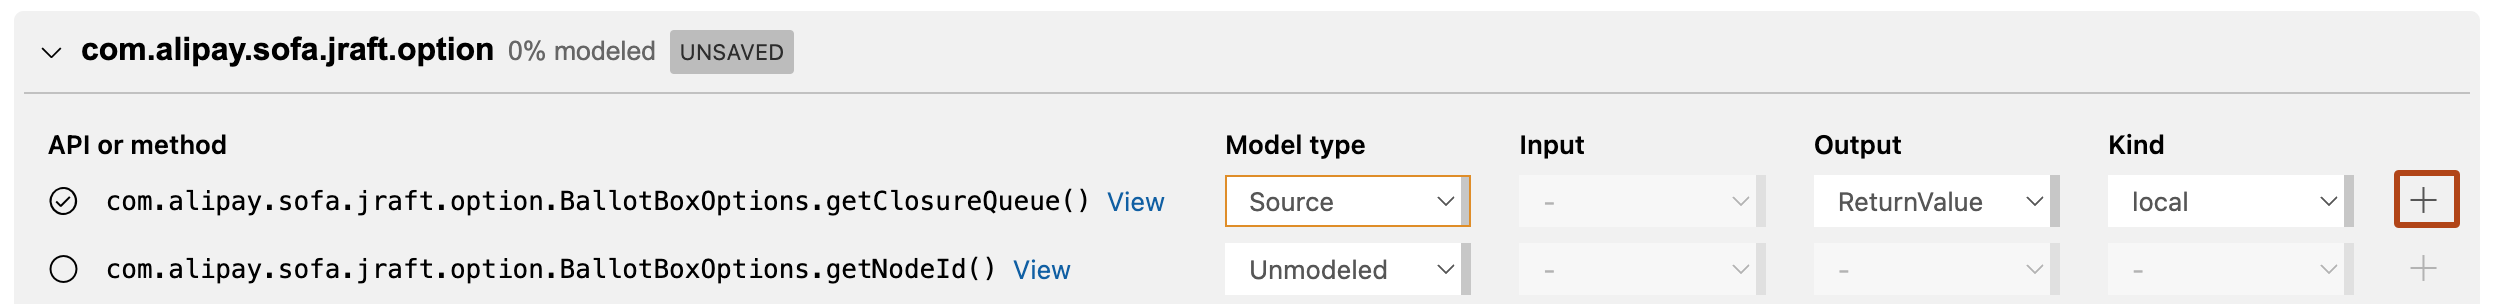 Visual Studio Code の CodeQL モデル パック エディターにおける [依存関係モード] ビューのスクリーンショット。モデリングの準備ができている "com.alipay.soft.jraft.option" パッケージで使用可能なパブリック メソッドが表示されています。 最初のメソッドの [表示] オプションが、オレンジ色の枠線で強調表示されています。